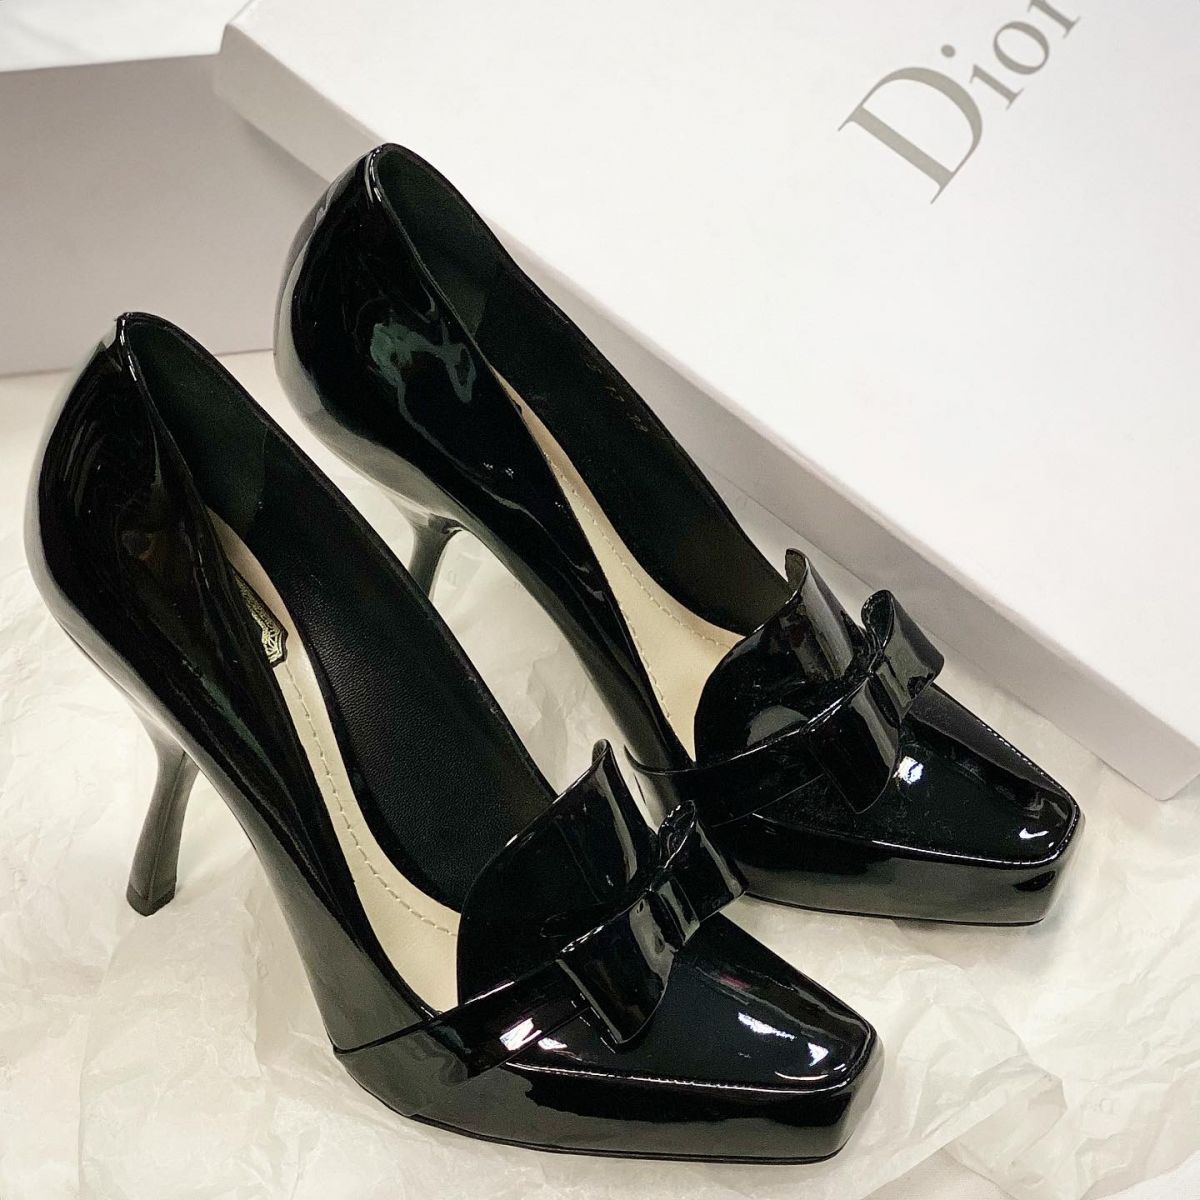 Туфли Christian Dior  размер 38 цена 30 770 руб / новые / 